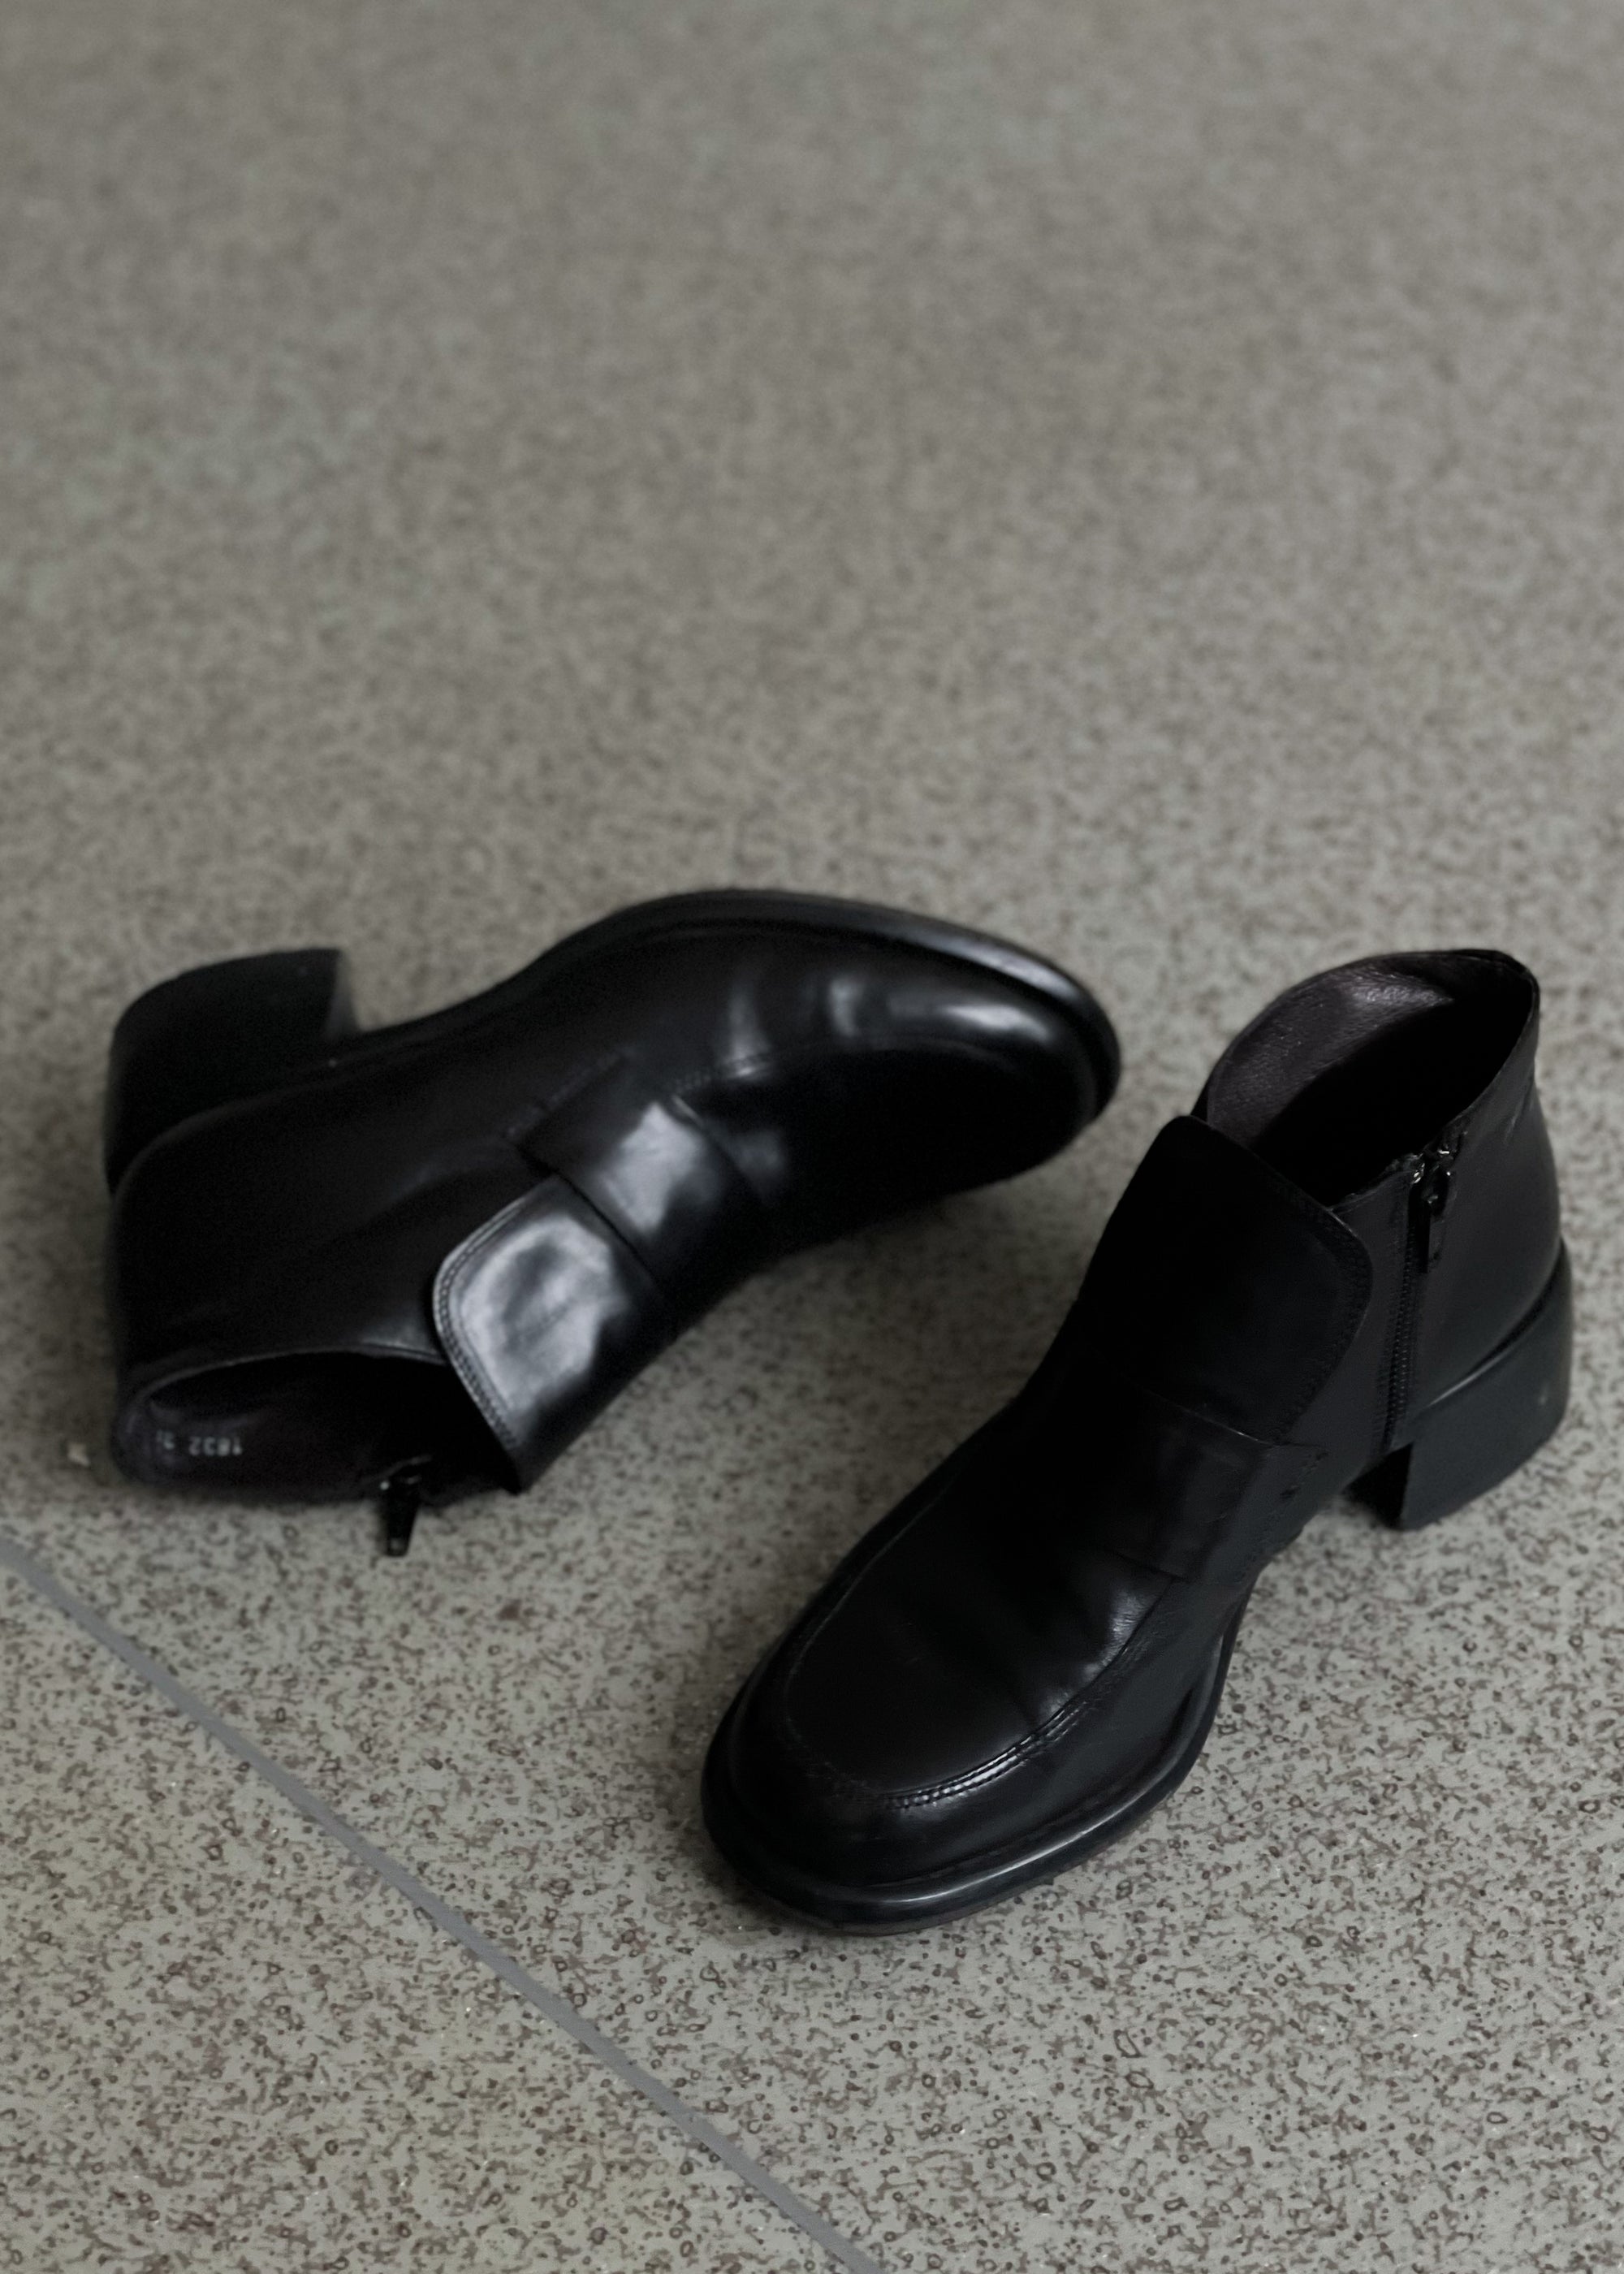 Vintage Black Shoes Size 36